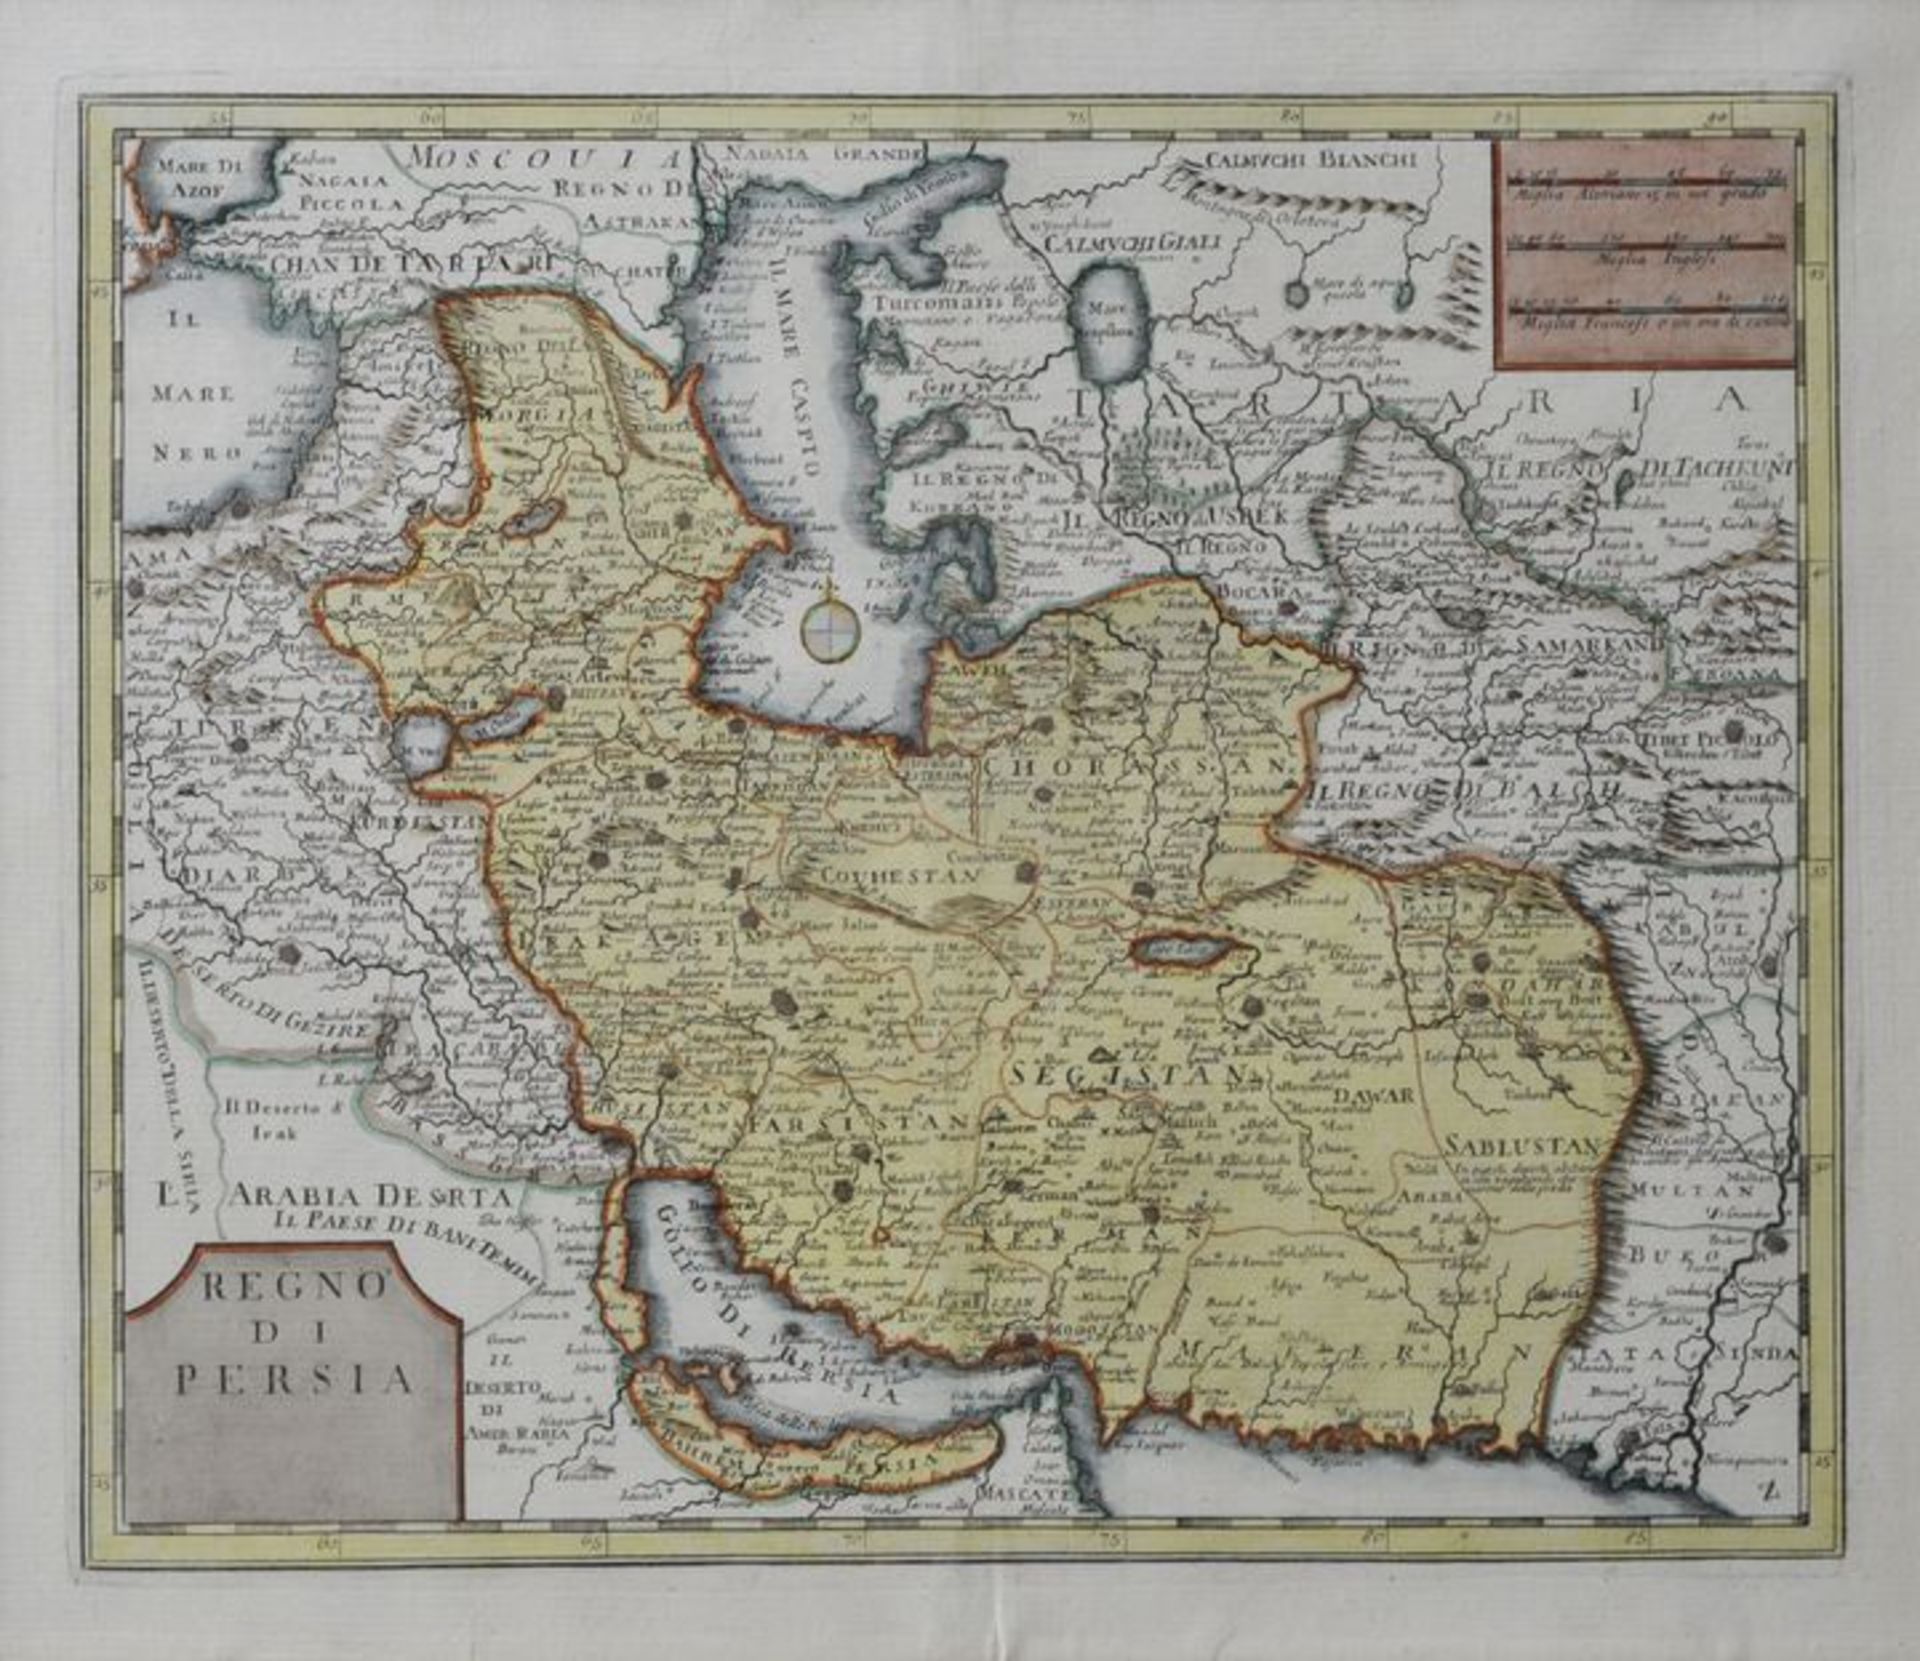 Karte von Persien: "Regon di Persia", ca. 1740, Kupferstichkarte, grenz-und flächenkol.,<